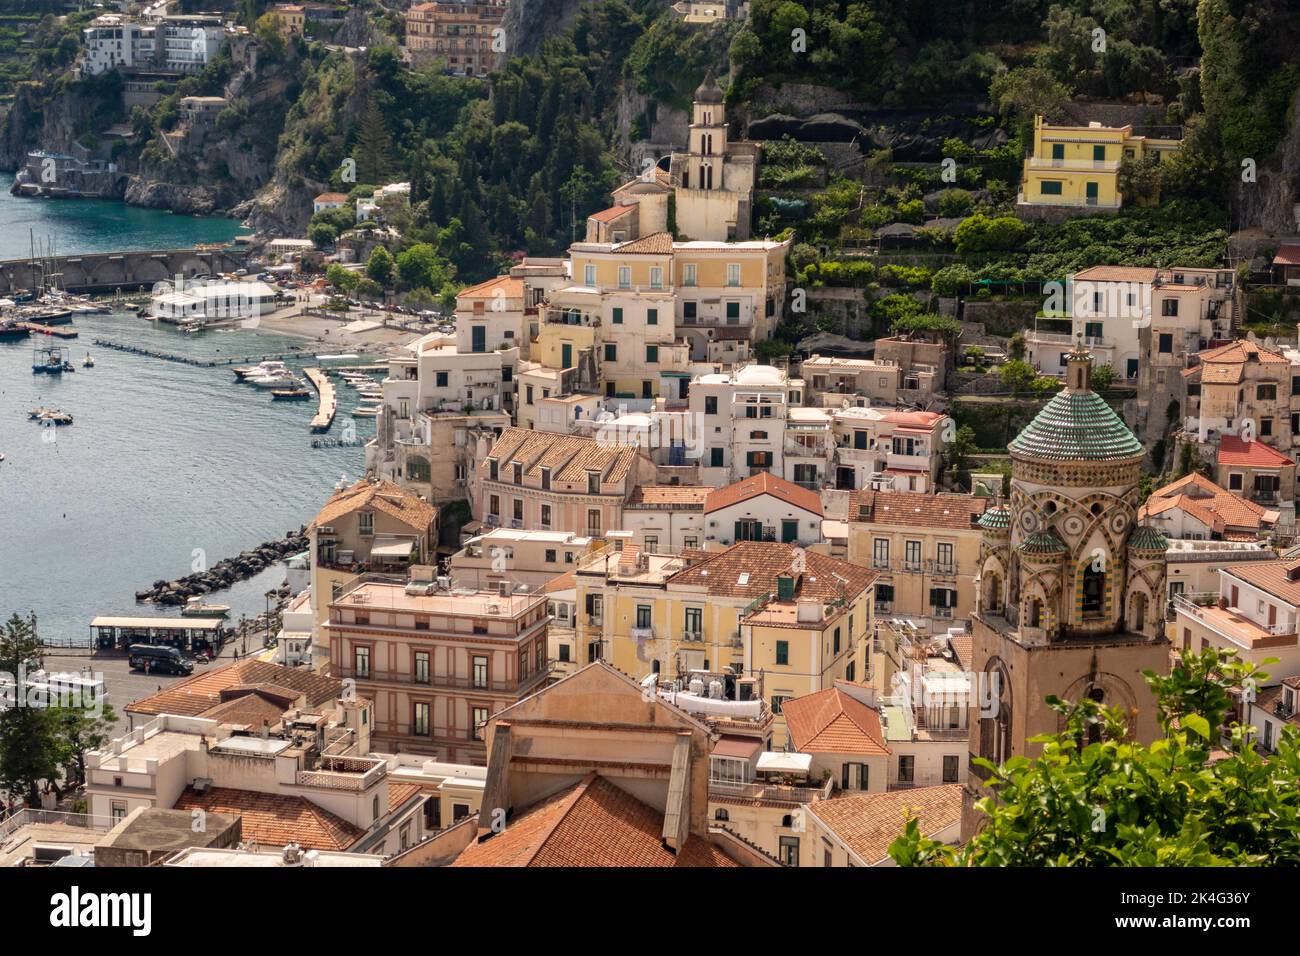 The town of Amalfi on the Amalfi Coast, Salerno, Campania, Italy Stock Photo